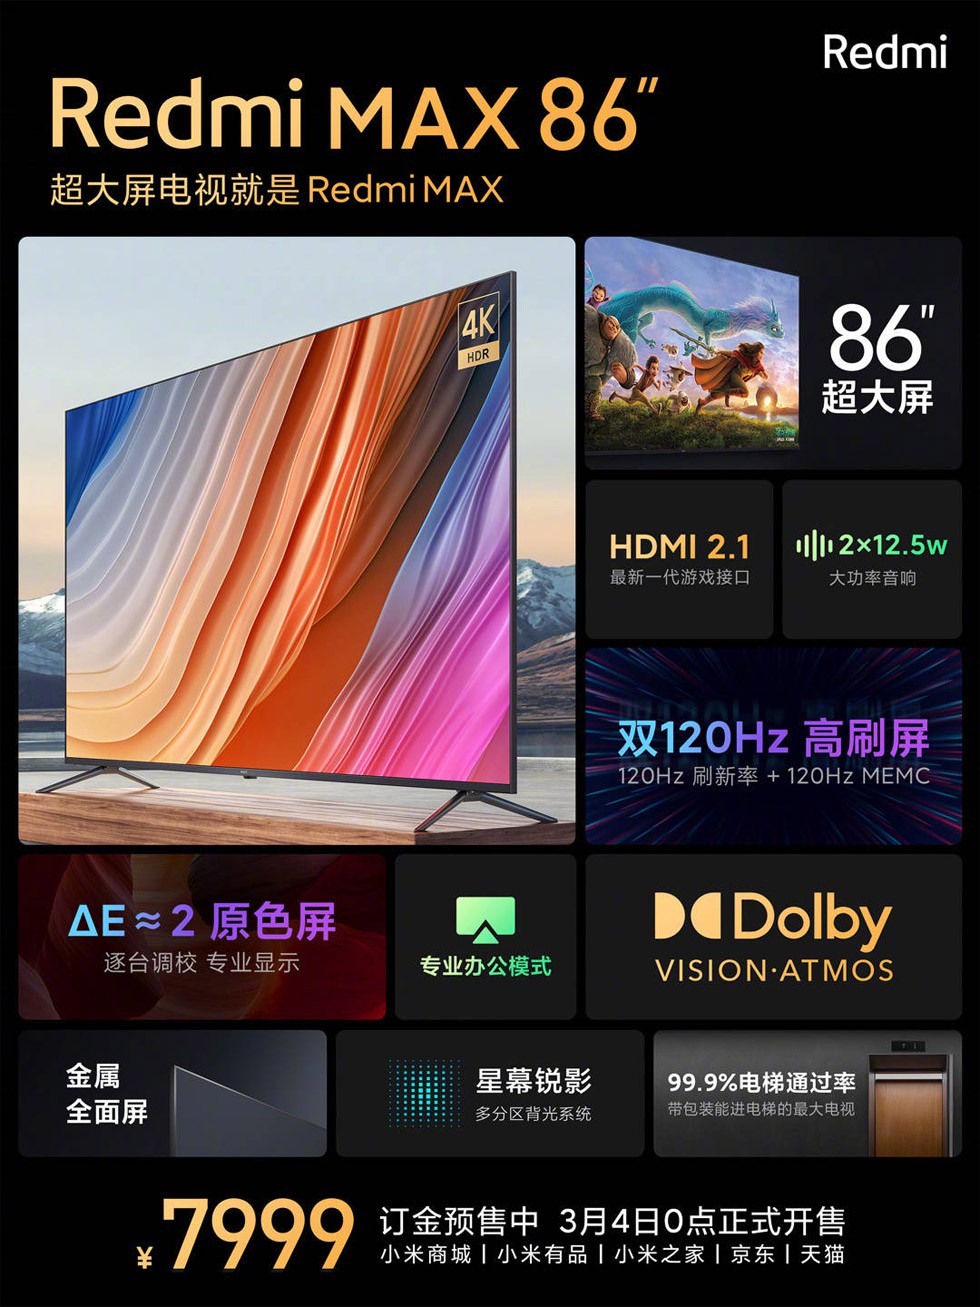 Redmi MAX TV 86 inch ra mắt: tần số quét 120Hz, HDMI 2.1, Dolby Vision / Atmos ảnh 3